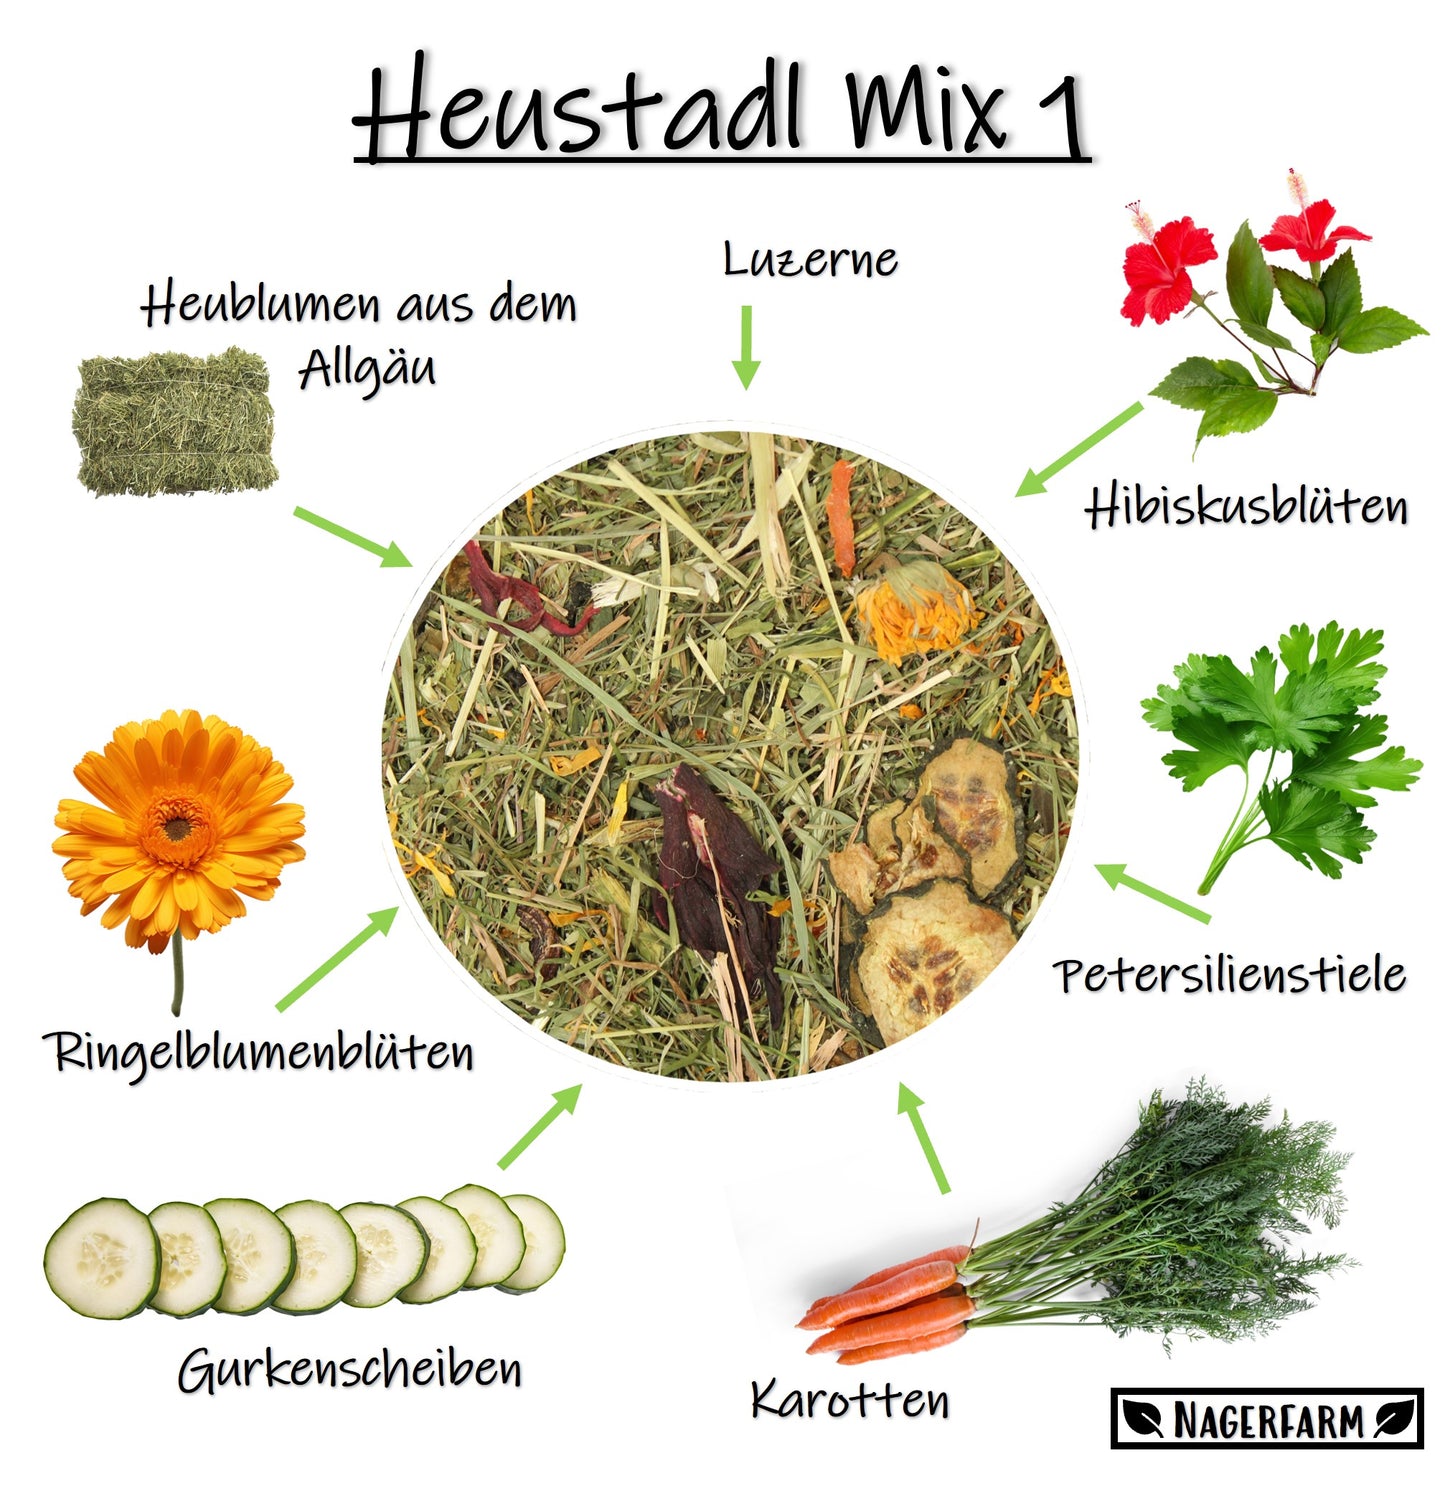 Heustadl Mix 1